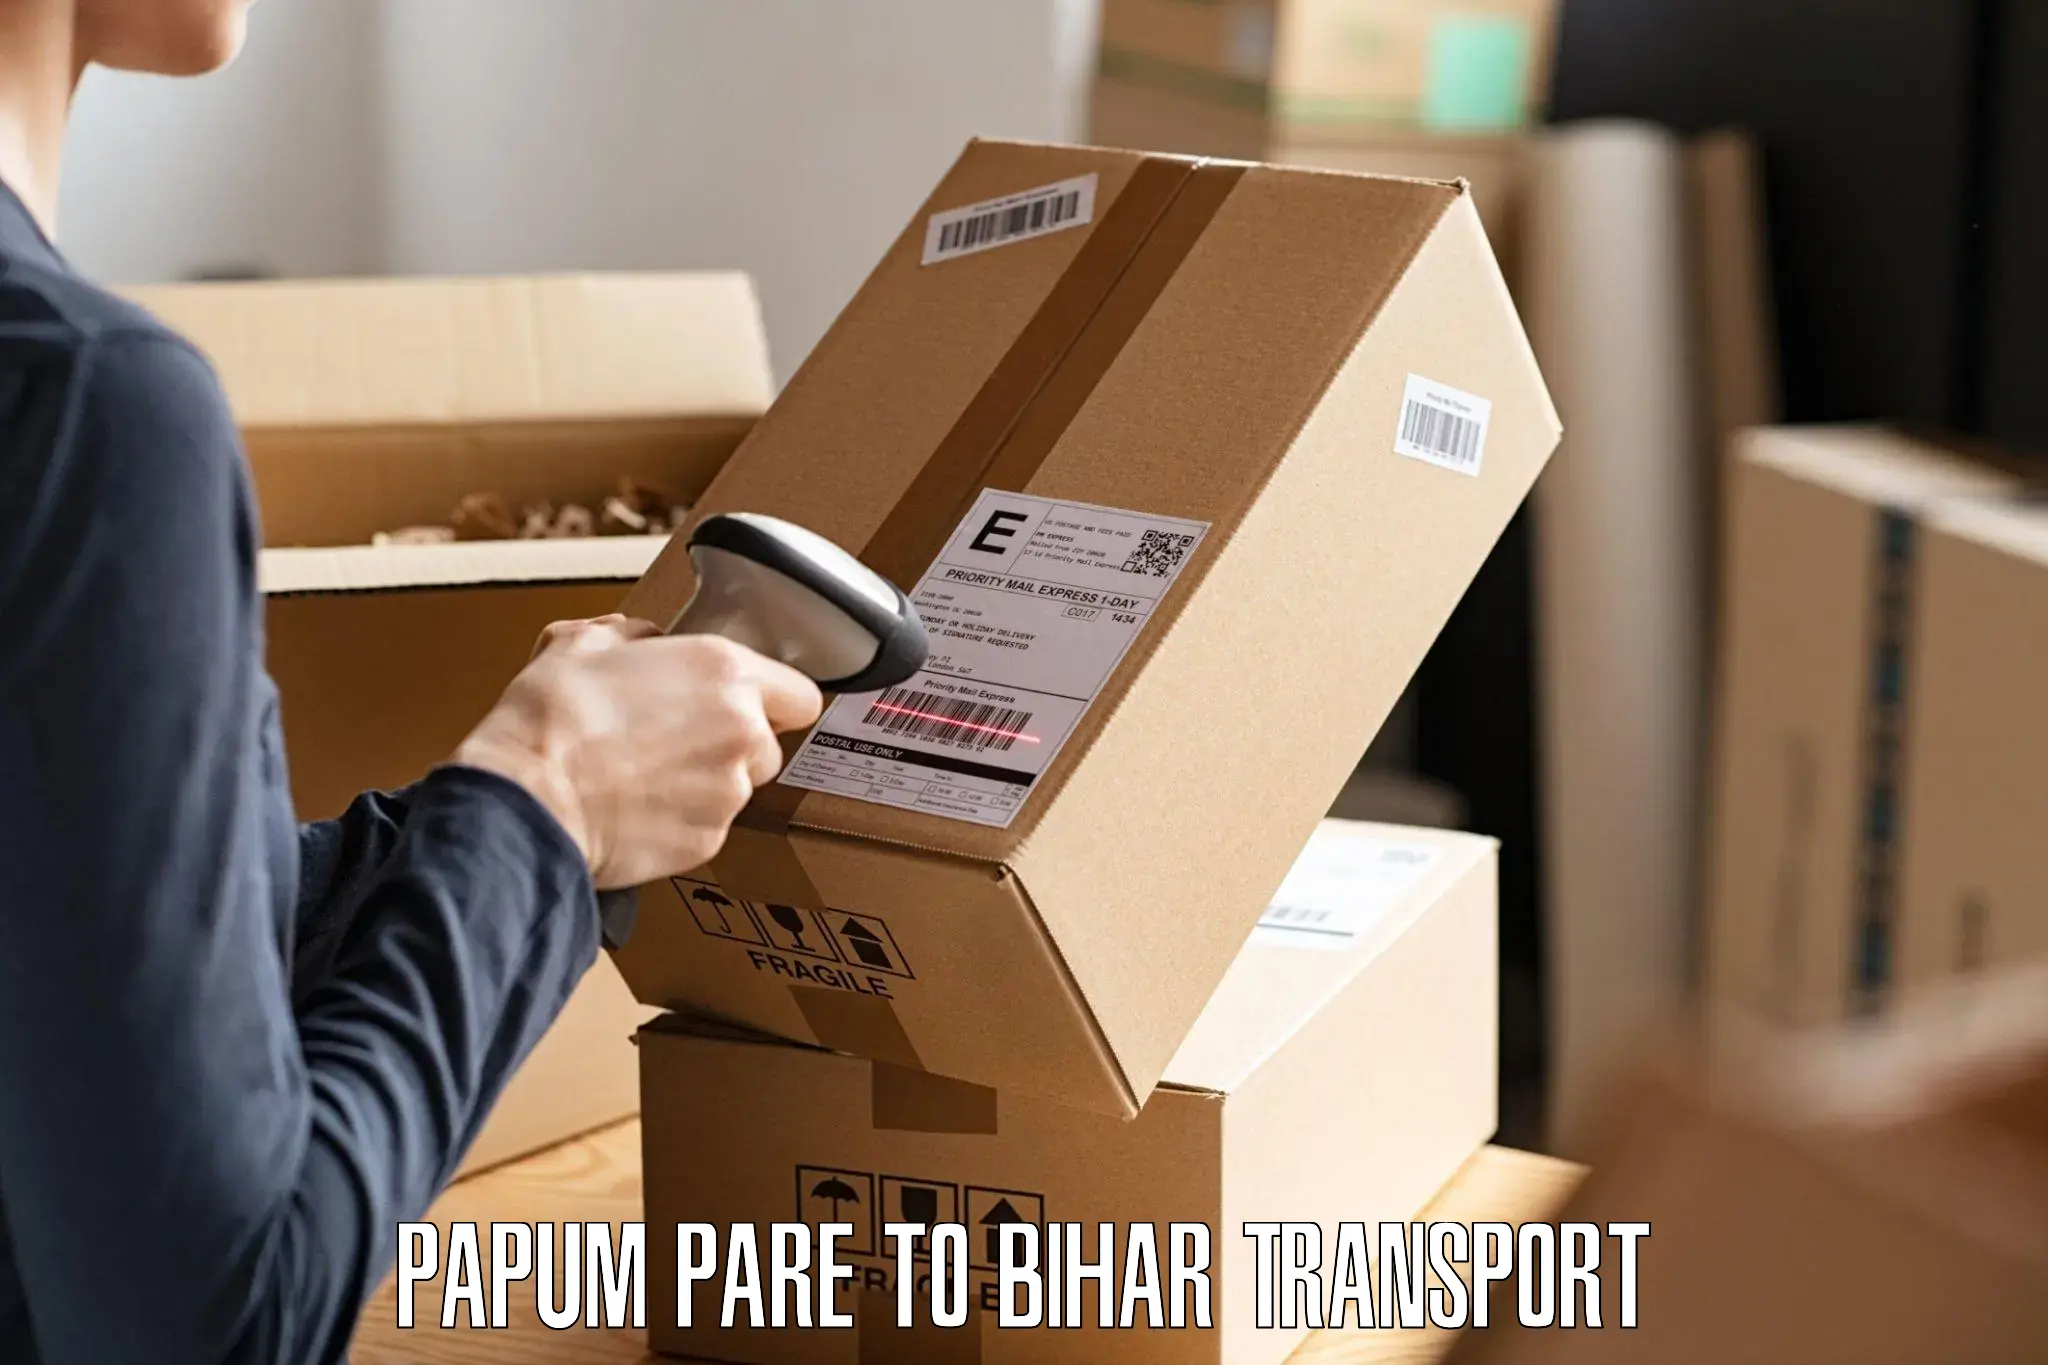 Daily parcel service transport Papum Pare to Mahnar Bazar